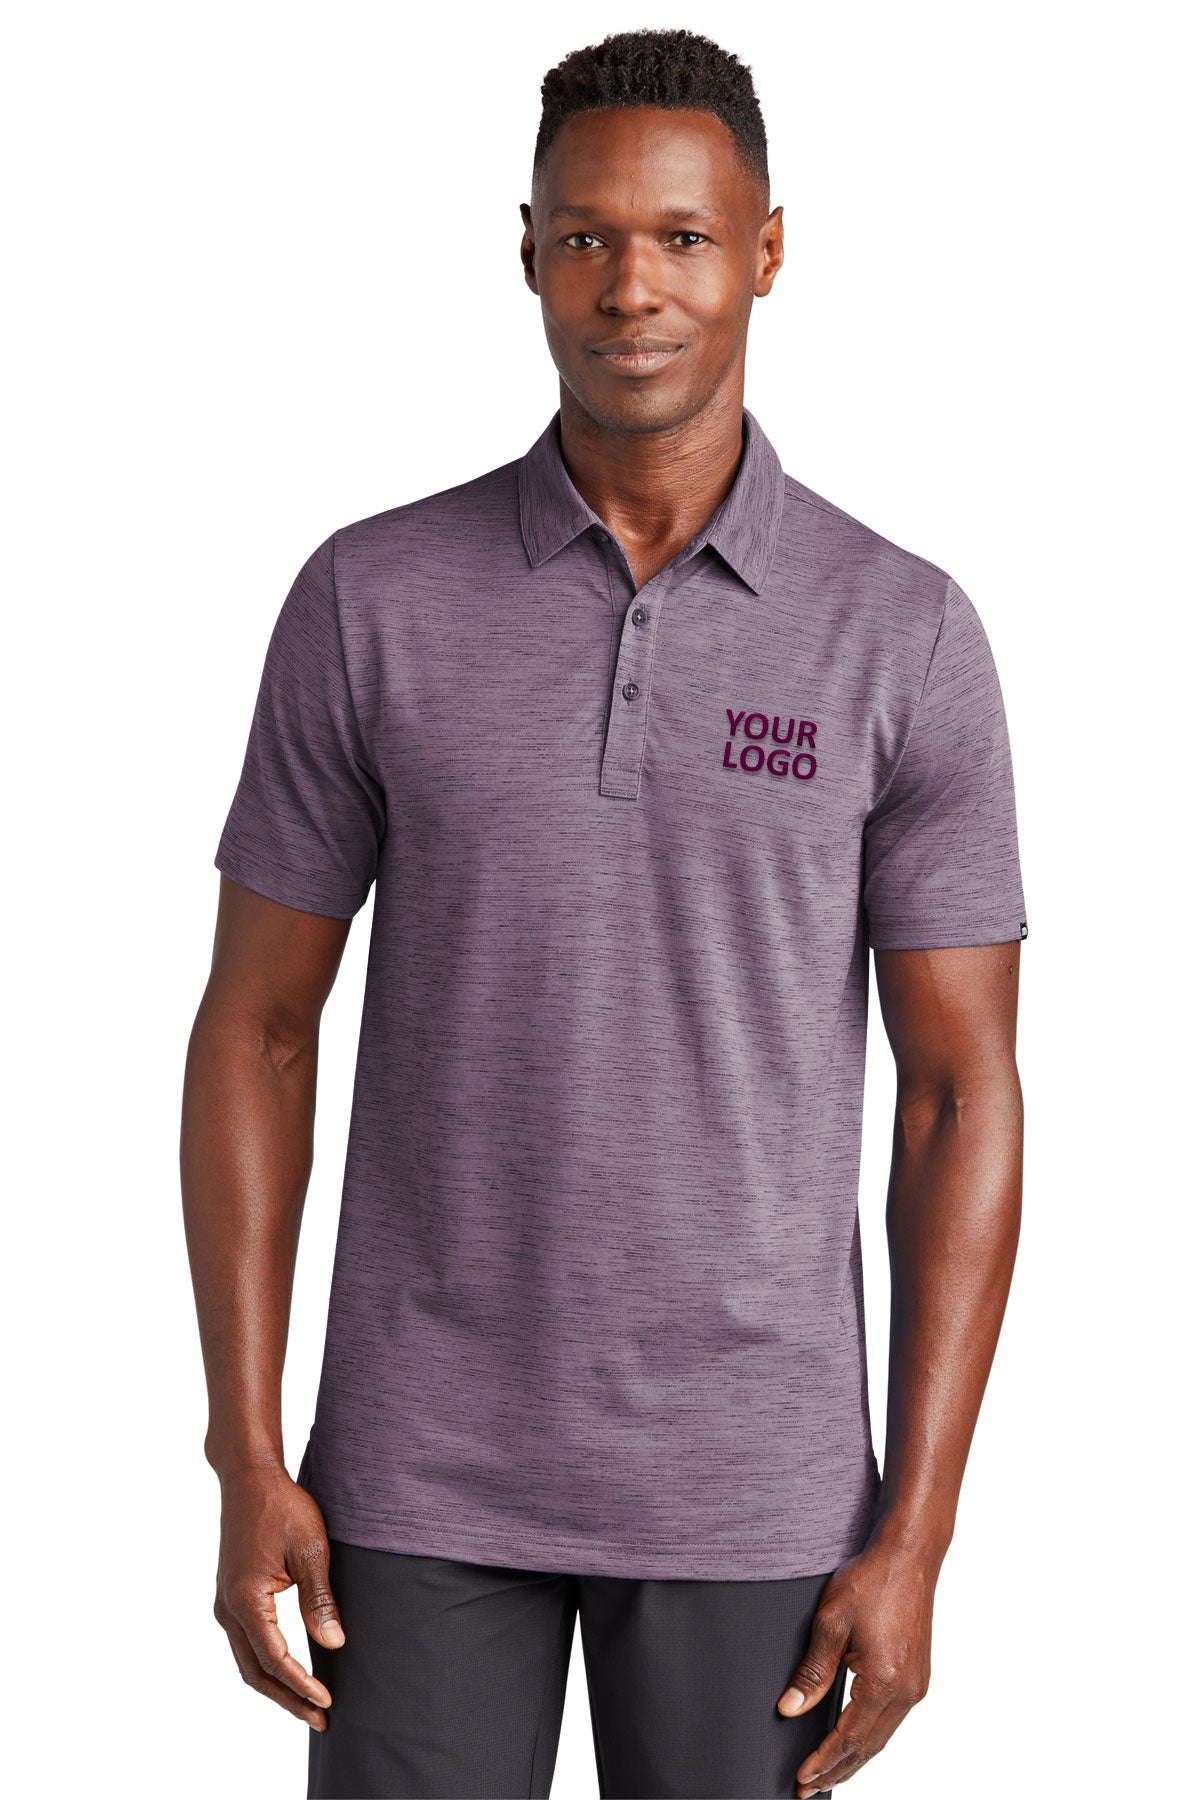 TravisMathew Purple Sage Polos custom polo shirts with logo